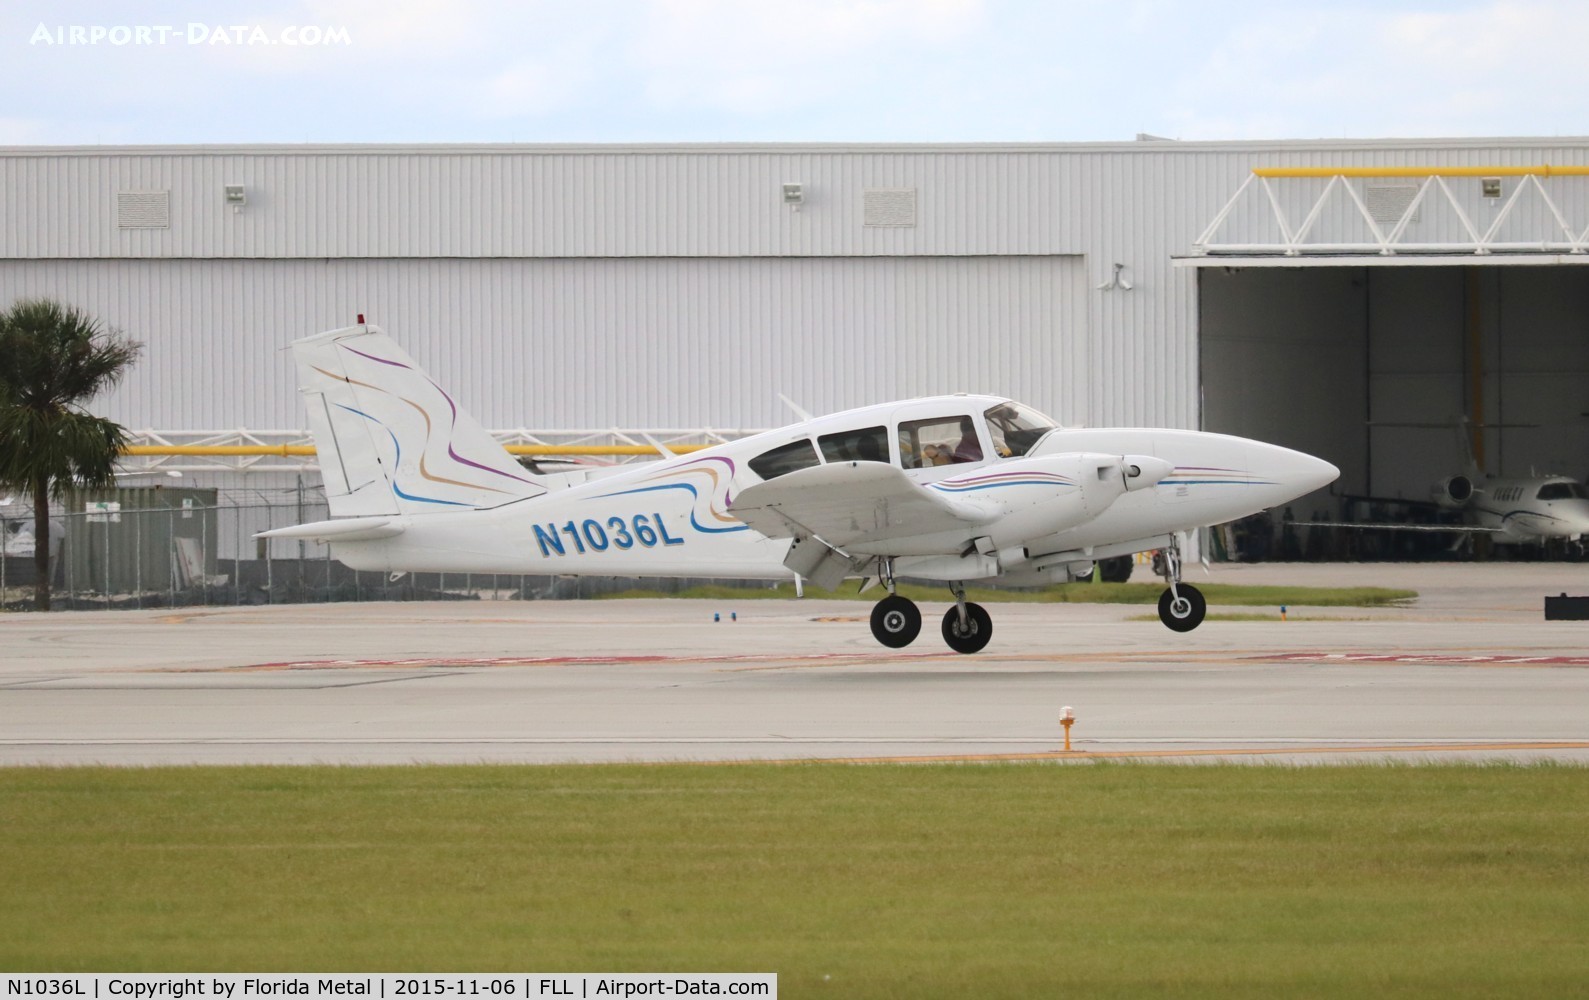 N1036L, 1976 Piper PA-23-250 C/N 27-7654135, PA-23-250